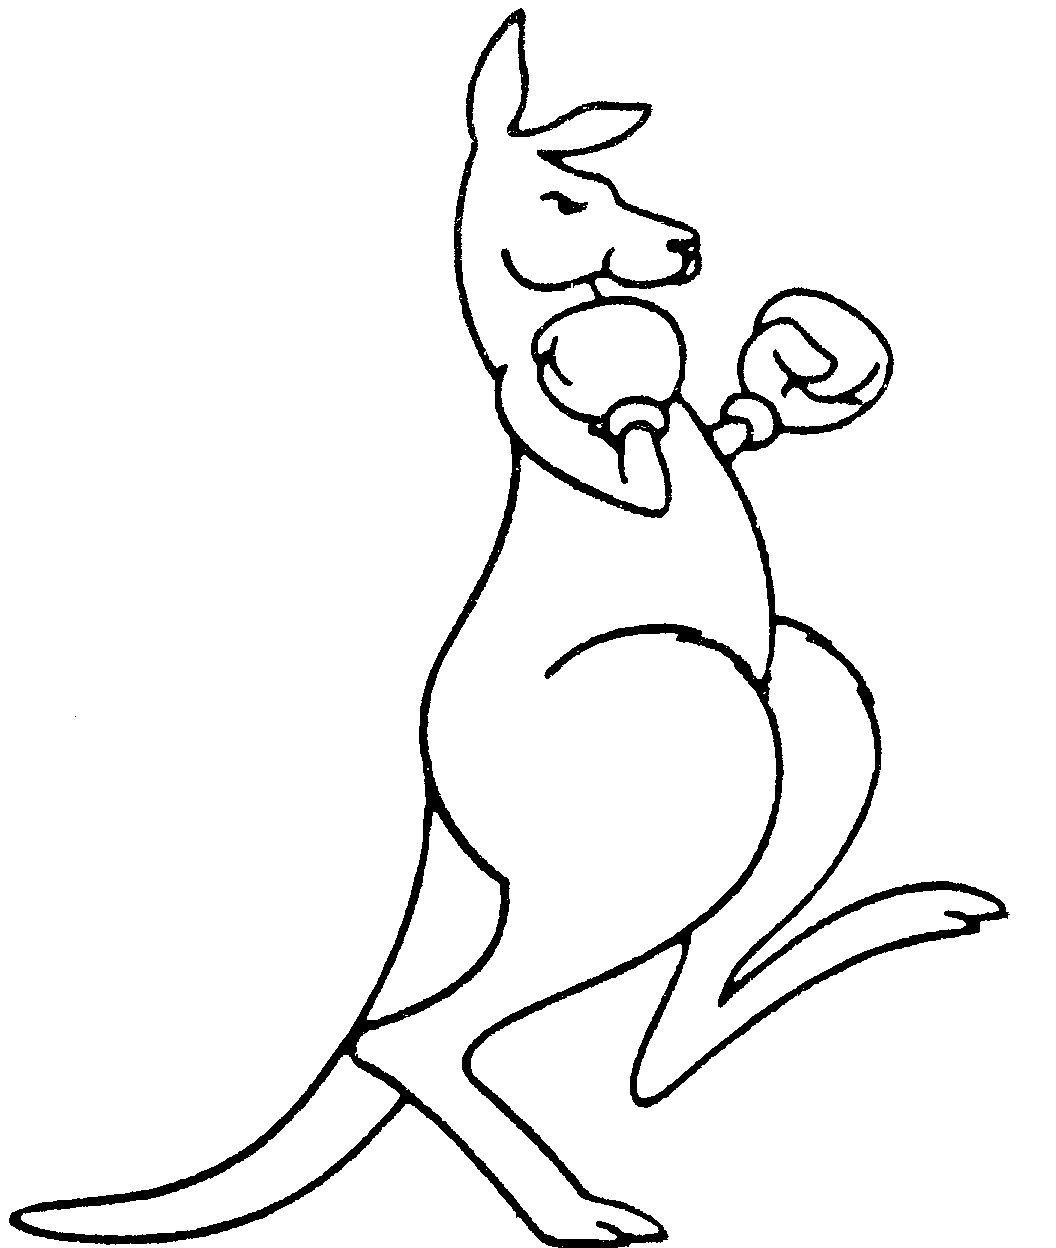 Boxing Kangaroo Logo - boxing kangaroo inspiration. Kangaroo